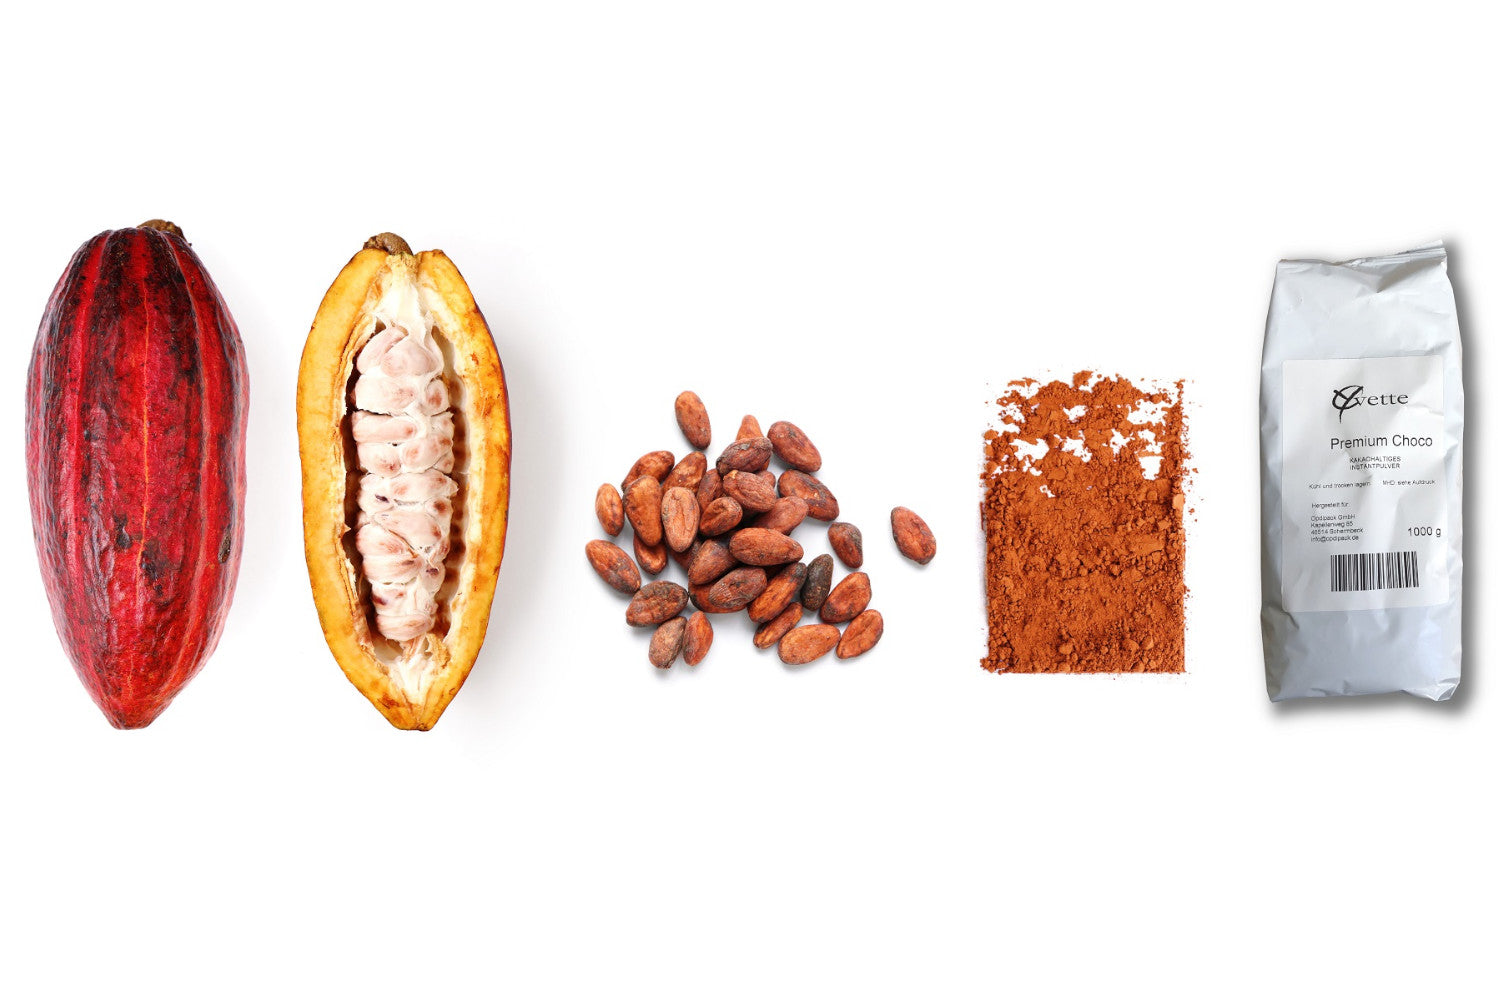 Entwicklung von Frischer Kakaobohne zur geschälten Kakaobohne zu Kakaopulver bis in die Verpackung